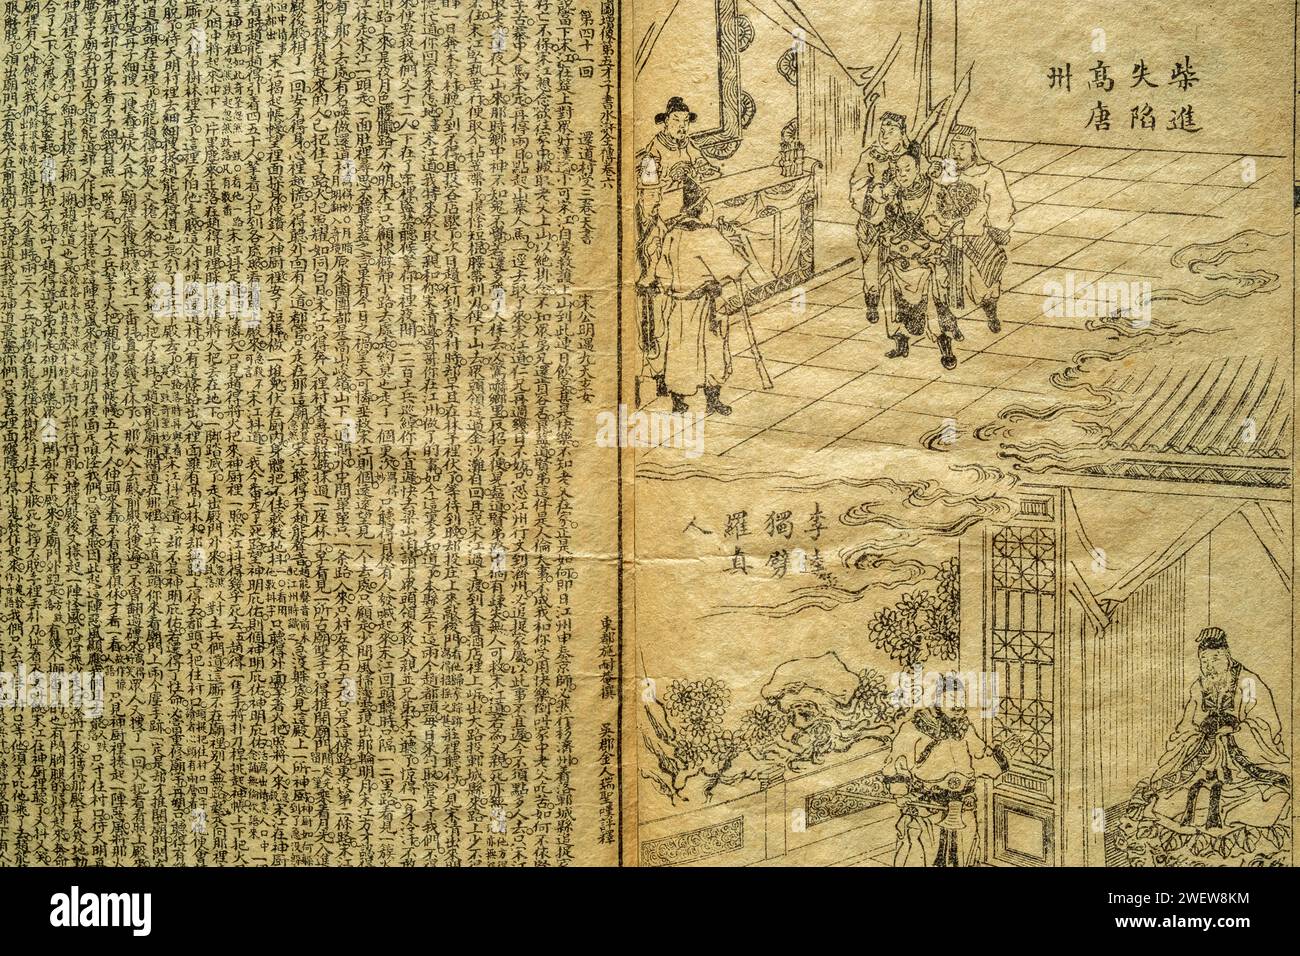 Illustration de la page intérieure du roman chinois Water Margin ou Outlaws of the Marsh de Shi Nai'an. Une copie de la dynastie Qing (1644-1911). Banque D'Images